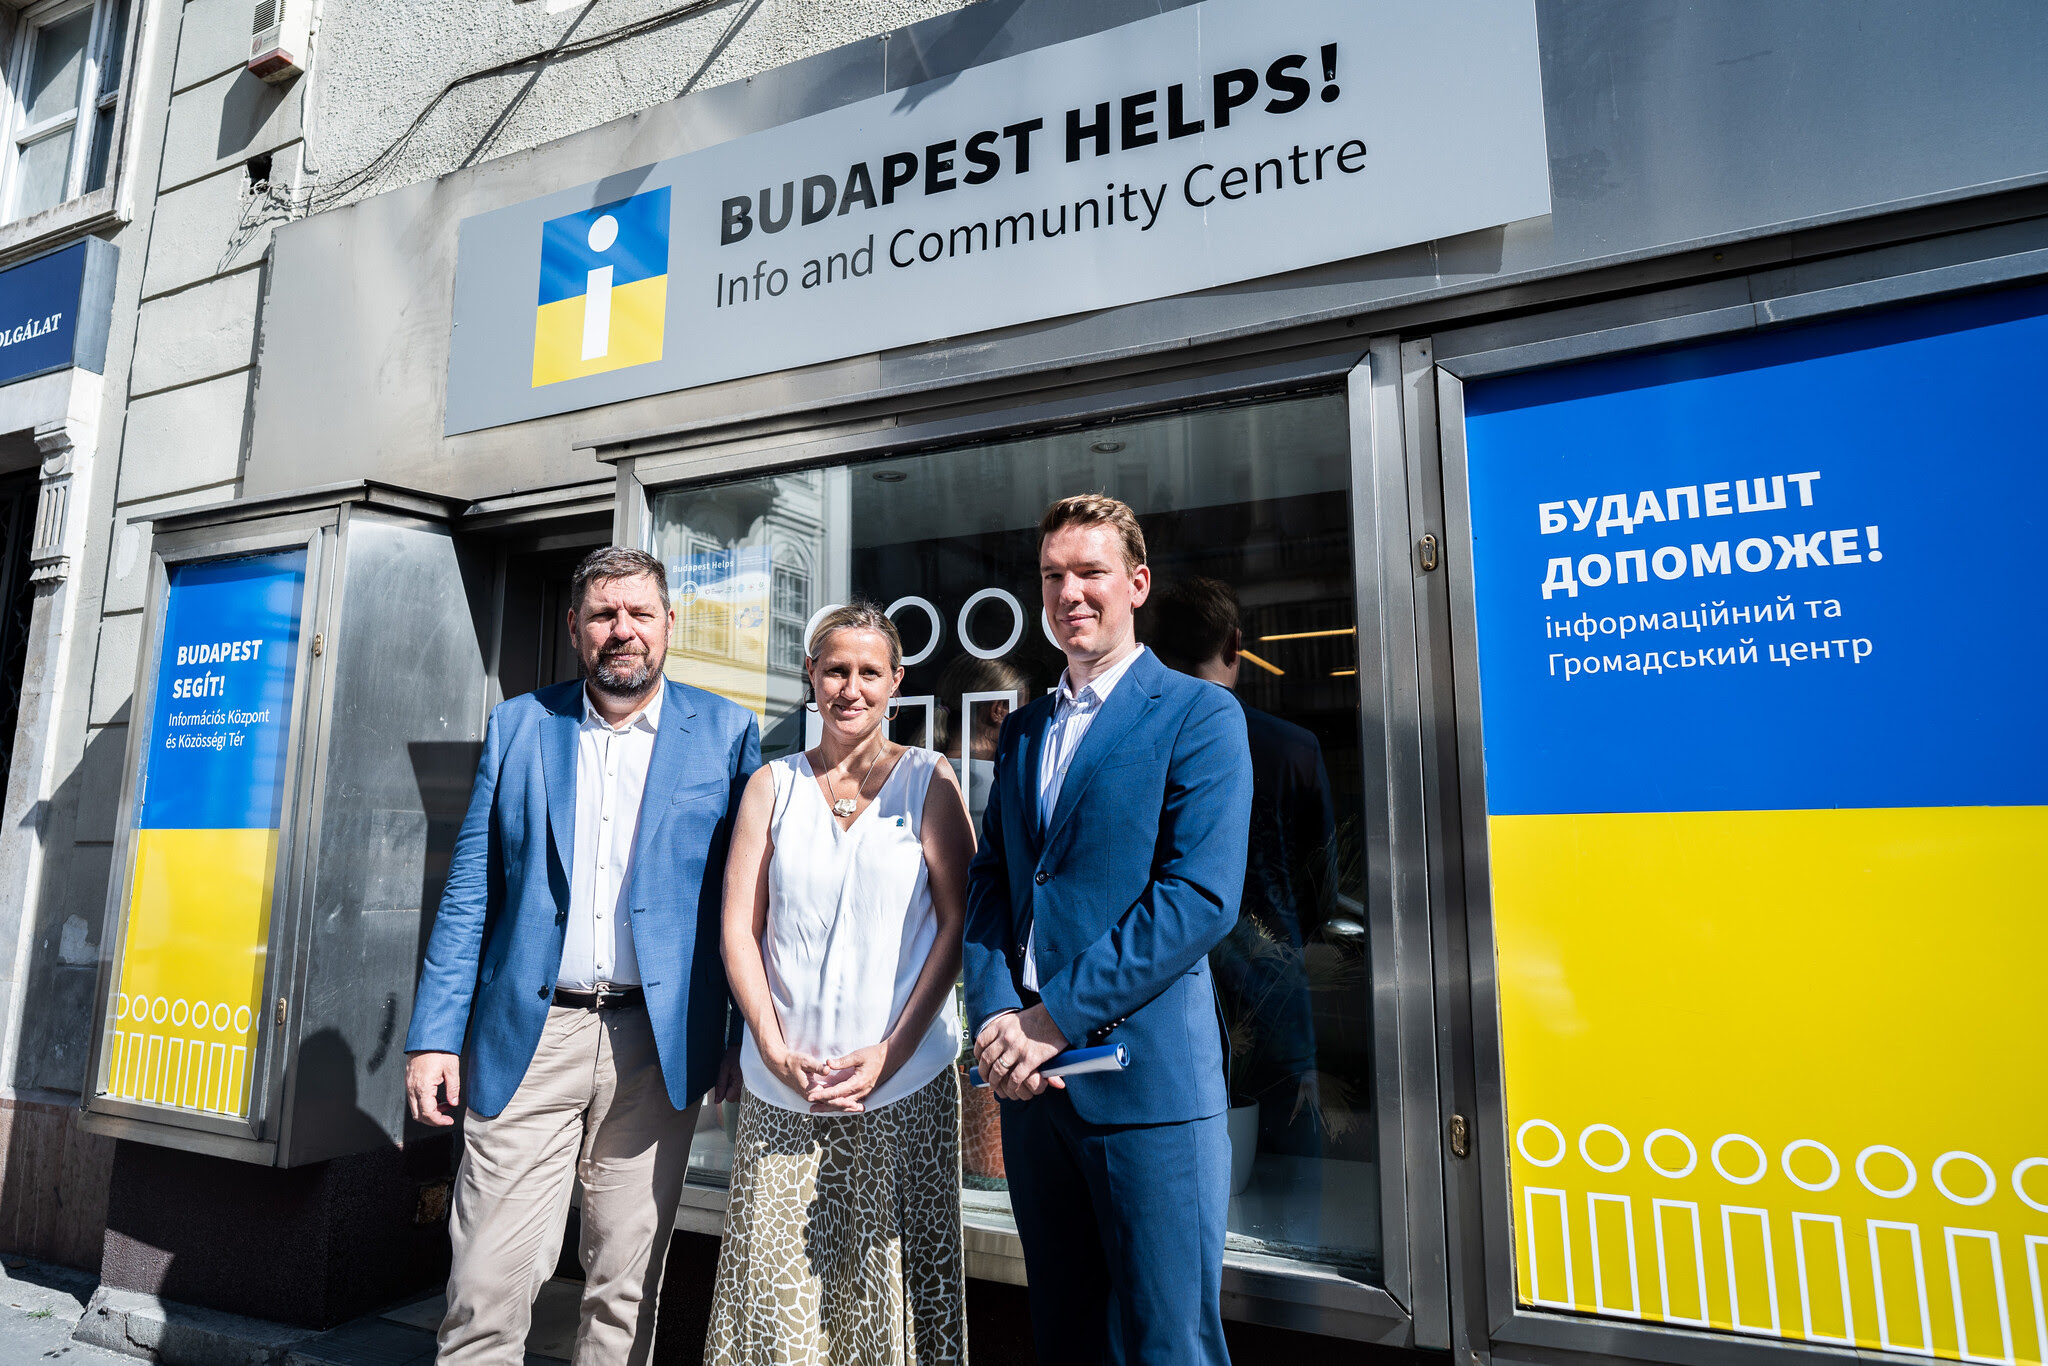 ‘Budapest Helps!’ Community Center for Ukrainian Refugees Ma...